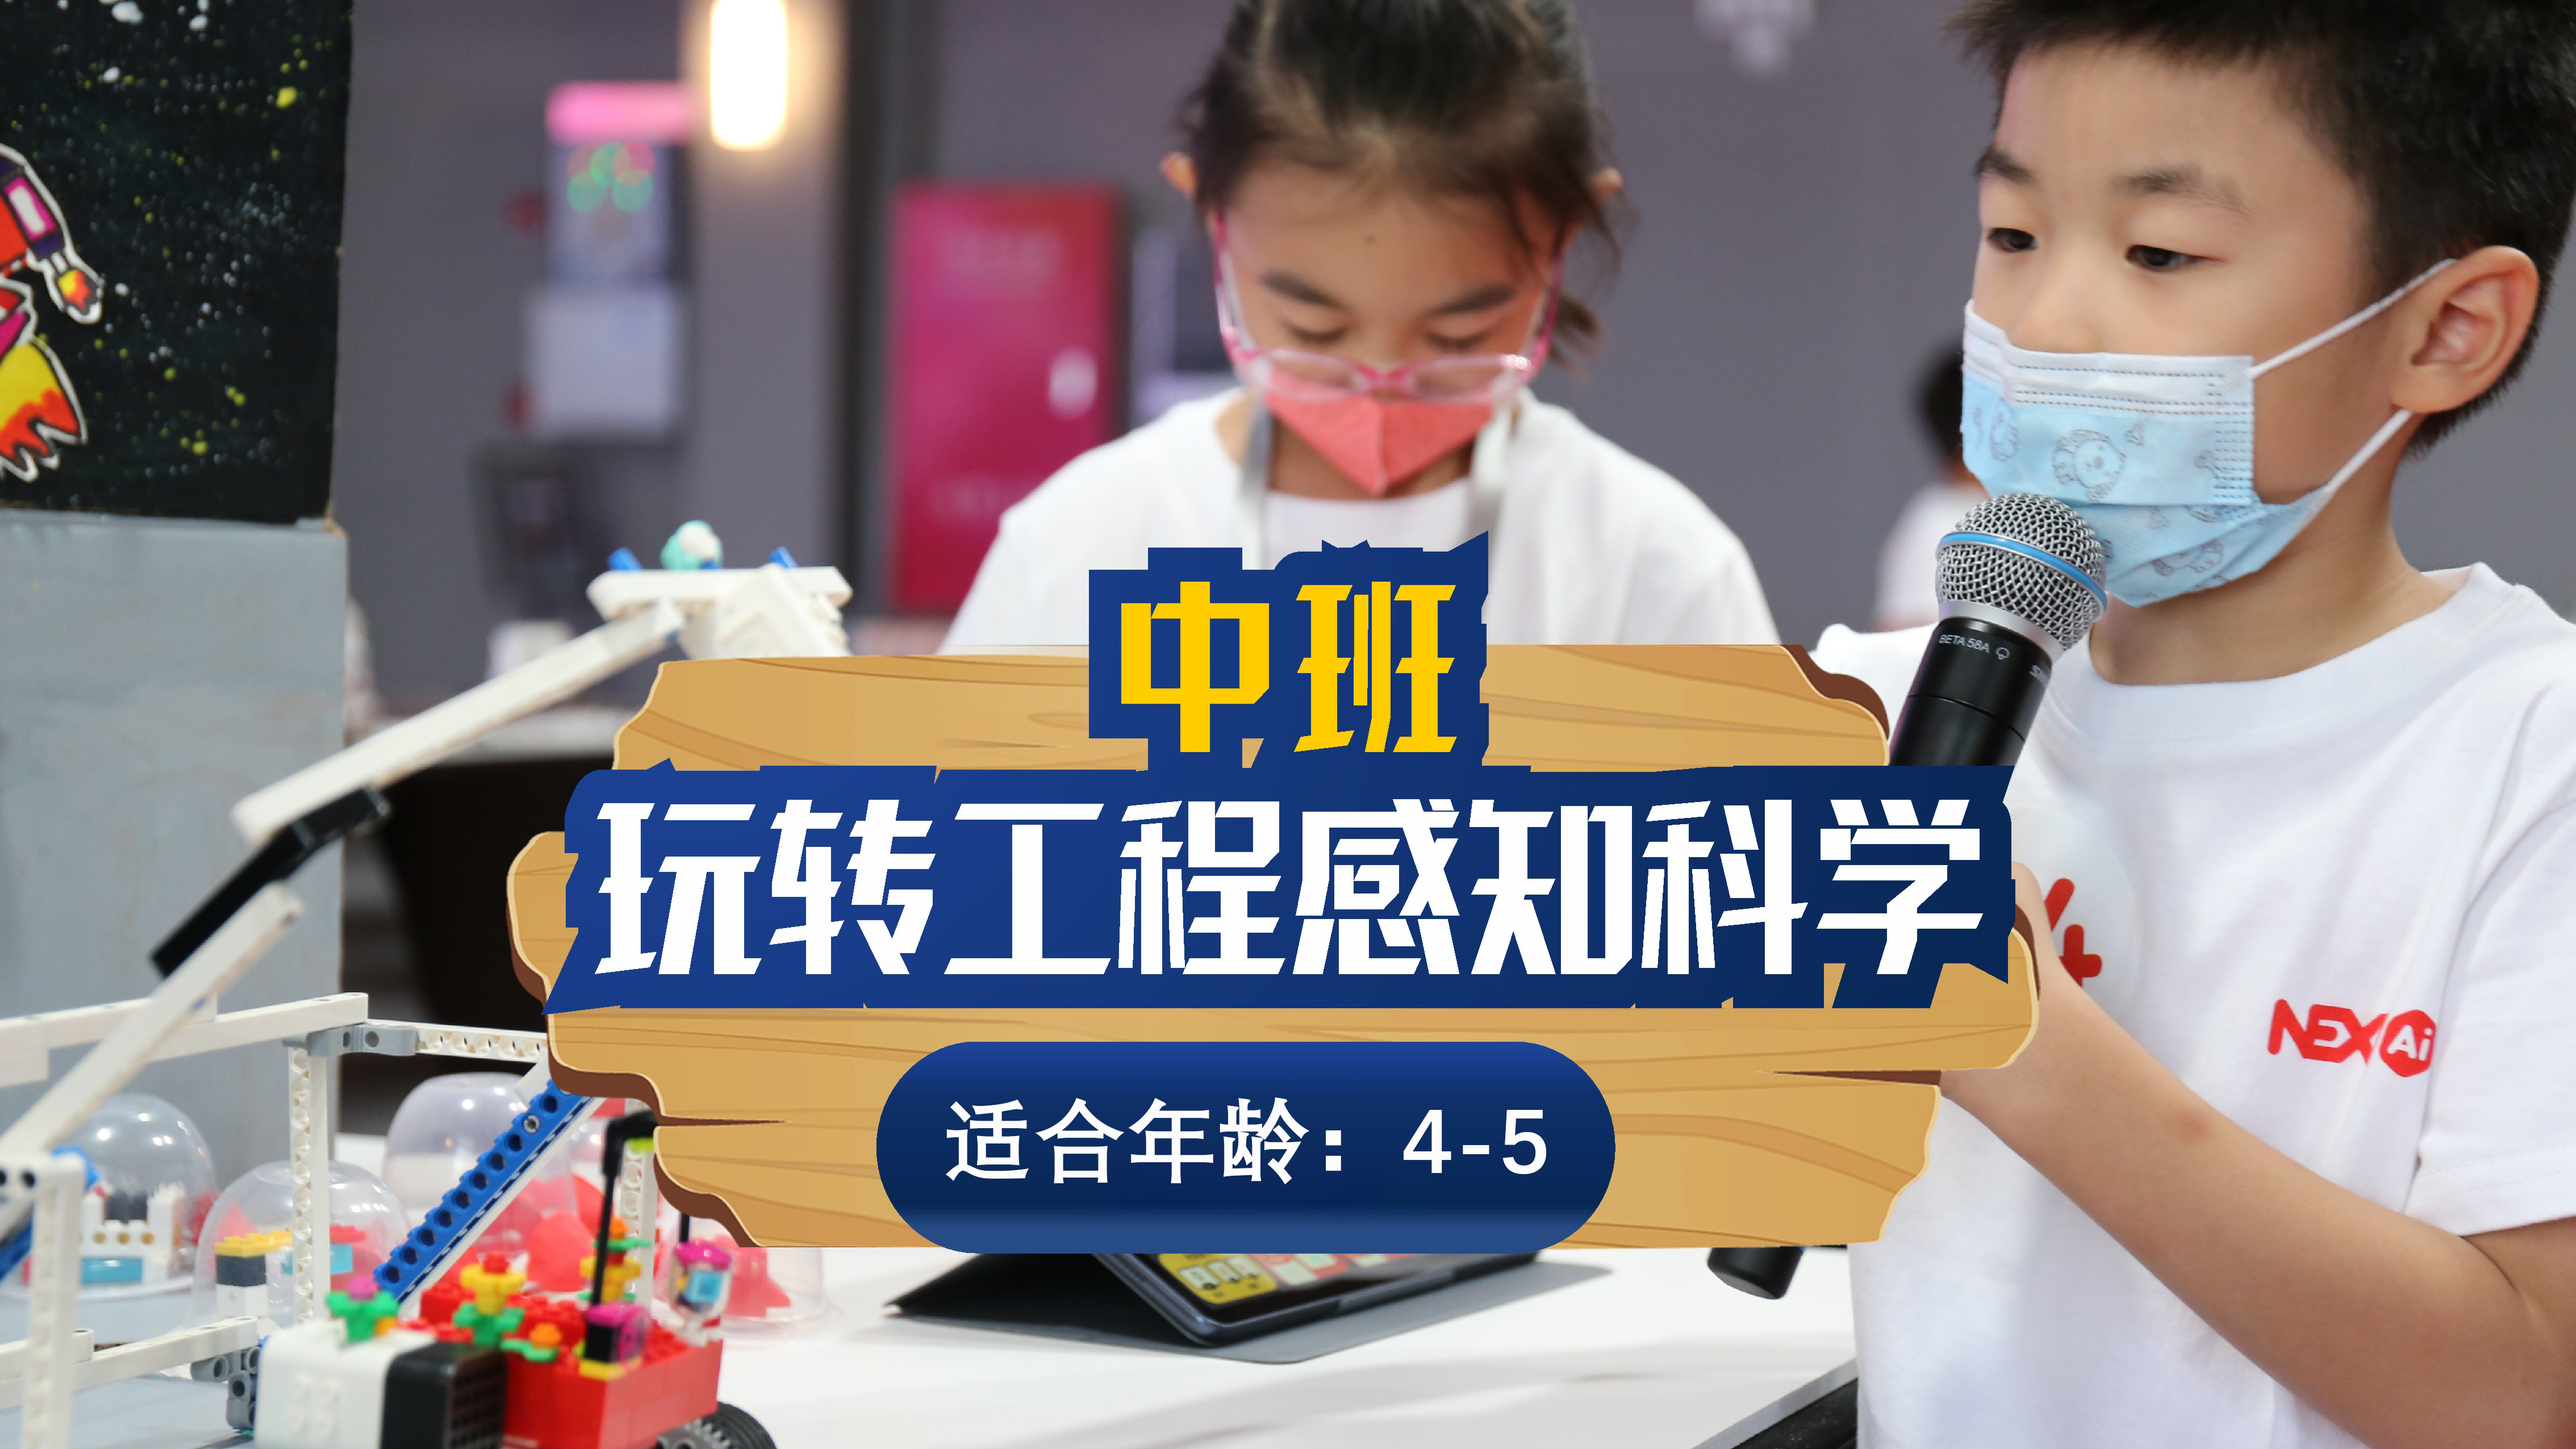 杭州斯坦星球科创编程[4-5岁]玩转工程感知科学课图片